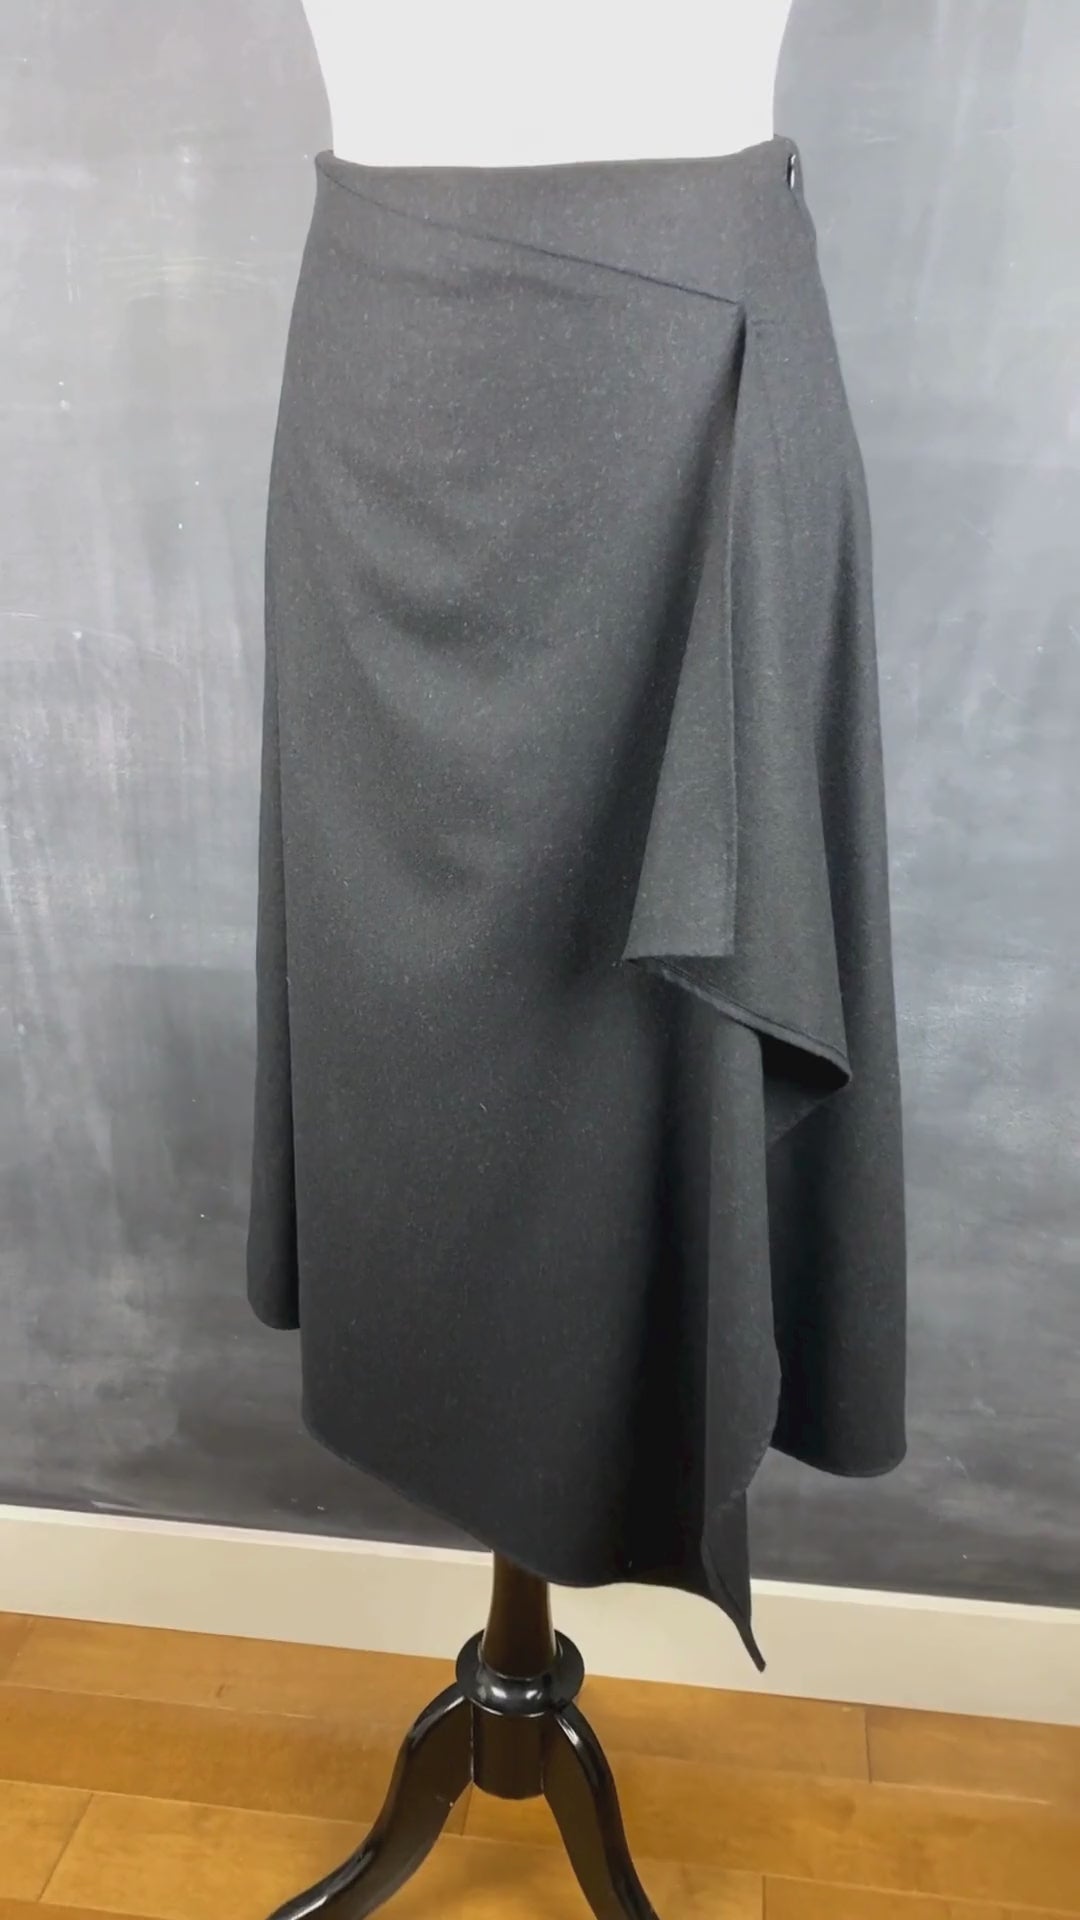 Jupe longue noire chiné en lainage Massimo Dutti, taille small. Vue de la vidéo qui présente tous les détails de la jupe.